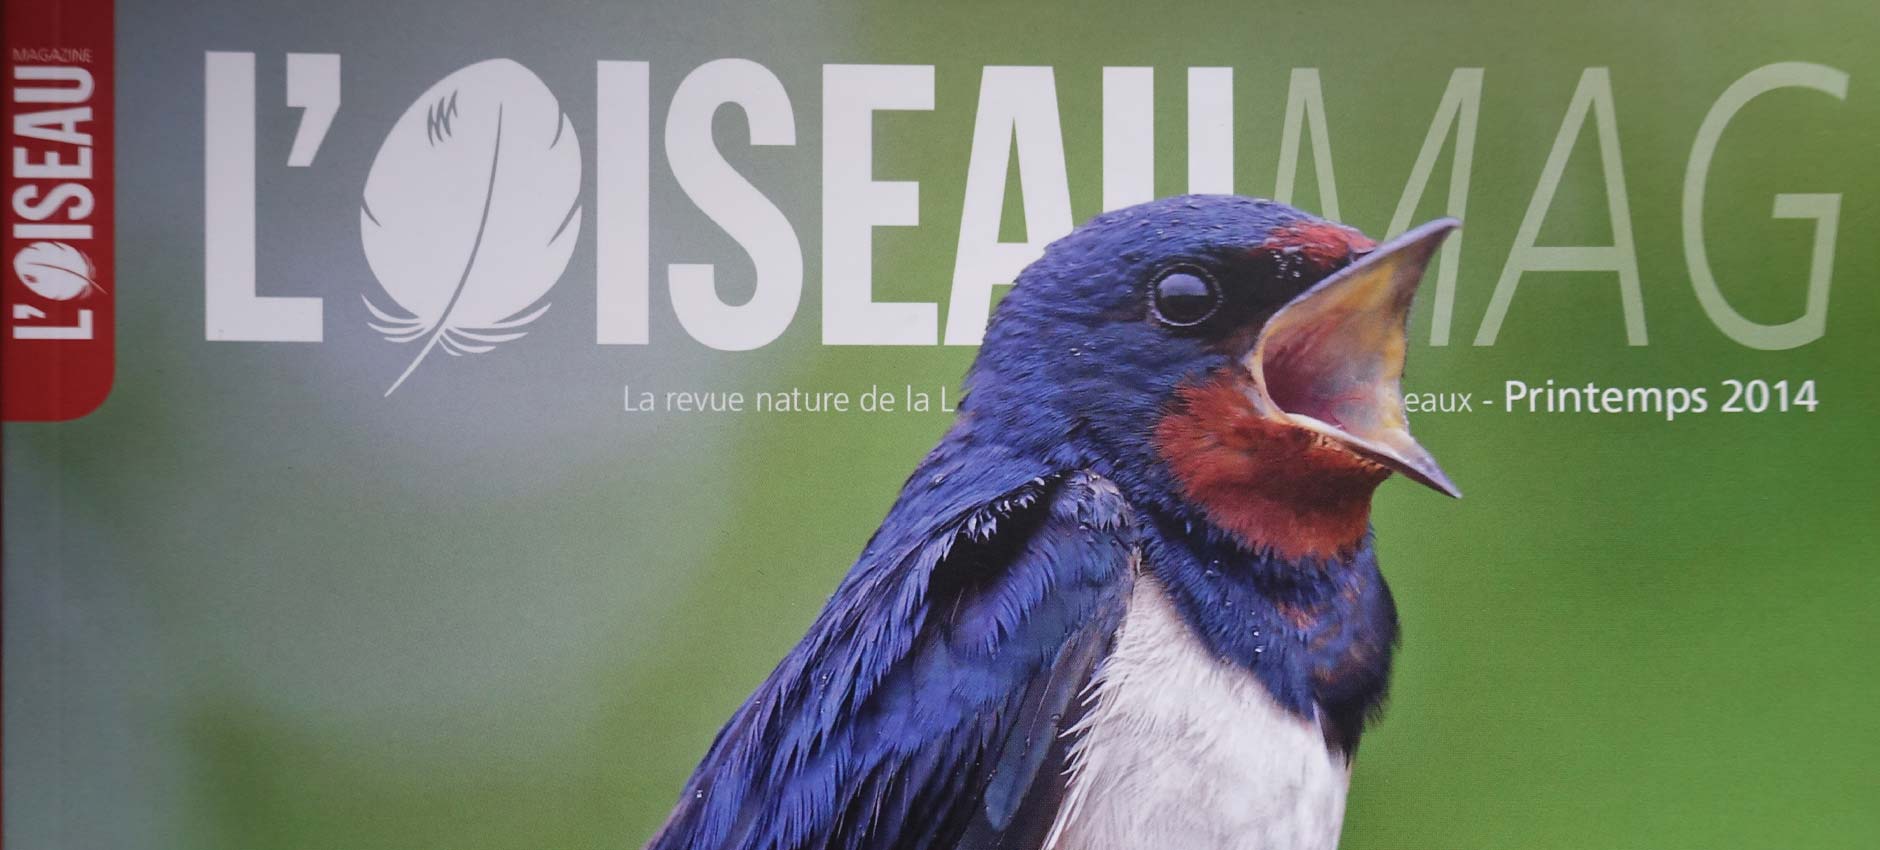 Publication “Oiseau Magazine” # 114